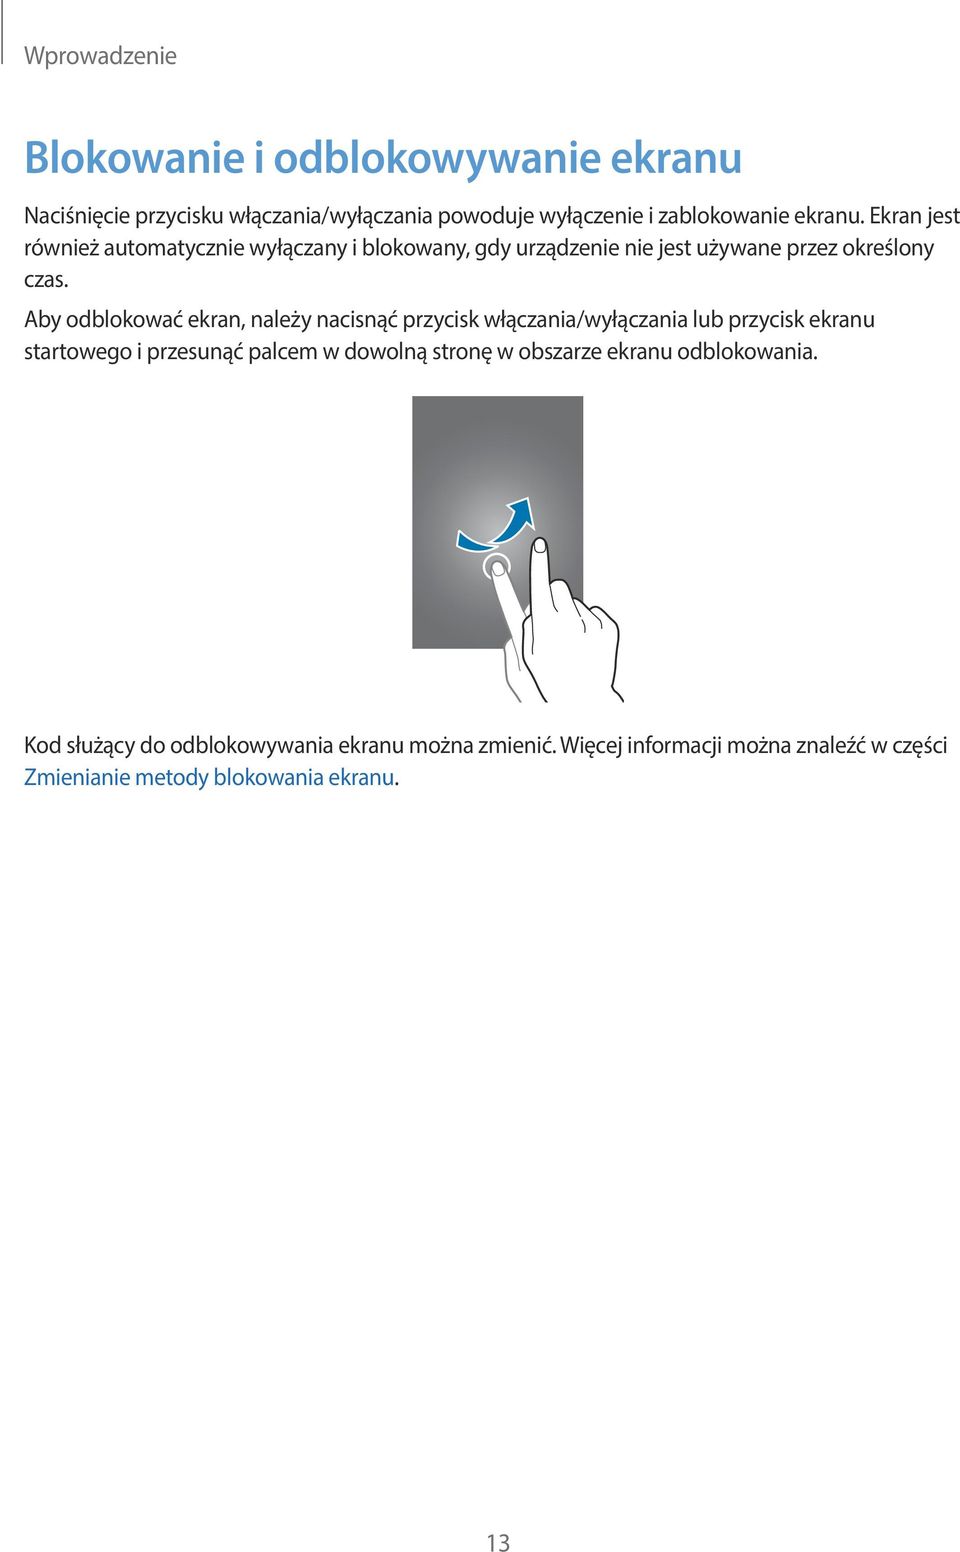 Aby odblokować ekran, należy nacisnąć przycisk włączania/wyłączania lub przycisk ekranu startowego i przesunąć palcem w dowolną stronę